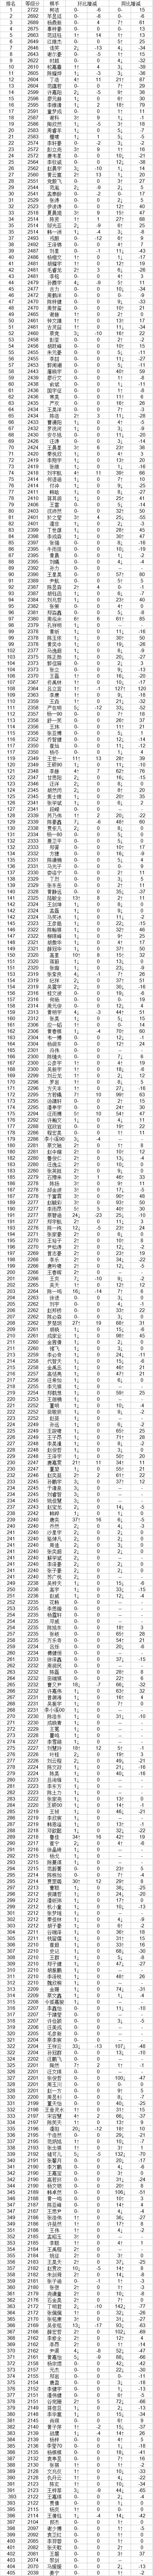 中国围棋等级分2019-11-30弈客增强版